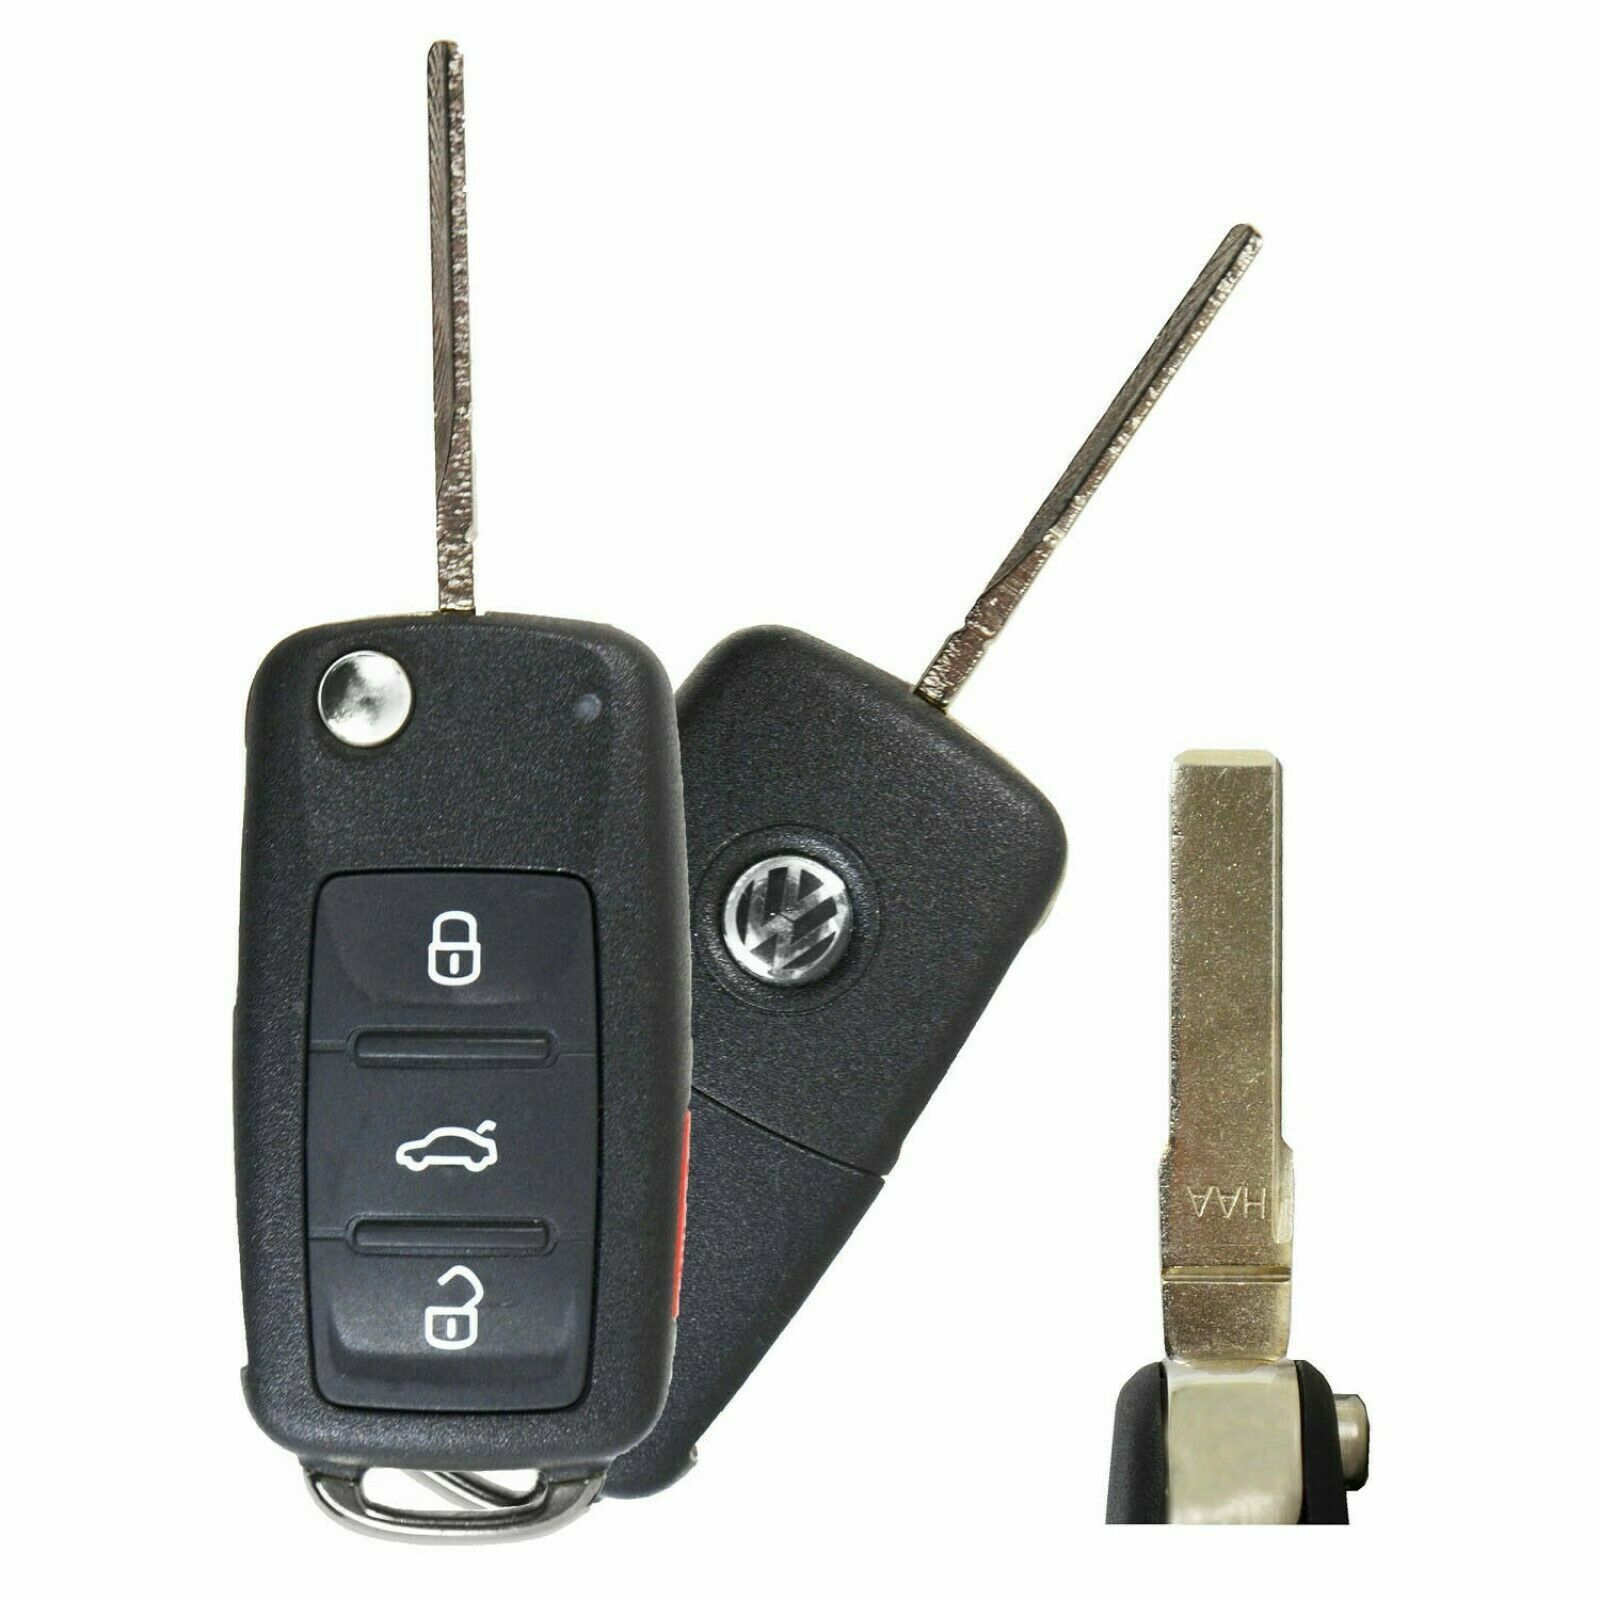 OEM Volkswagen VW Jetta Passat Remote Head Flip Key Fob NBG010180T Uncut Blade